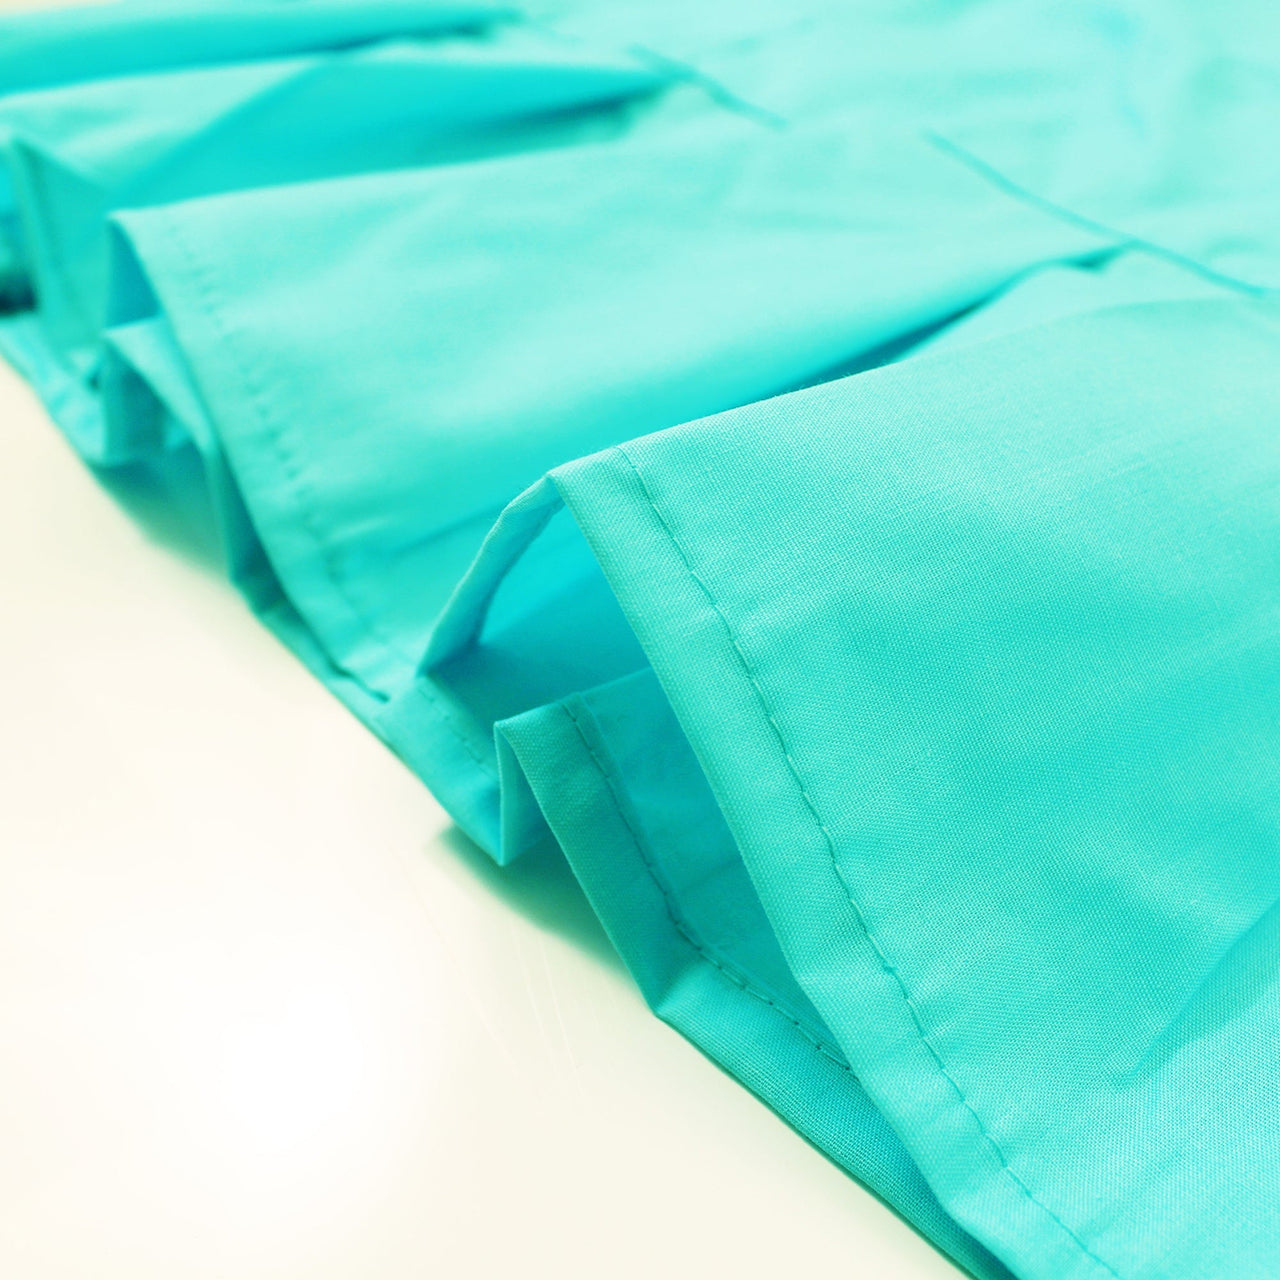 Aqua - Sari (Saree) Petticoat - Available in S, M, L & XL - Underskirts For Sari's